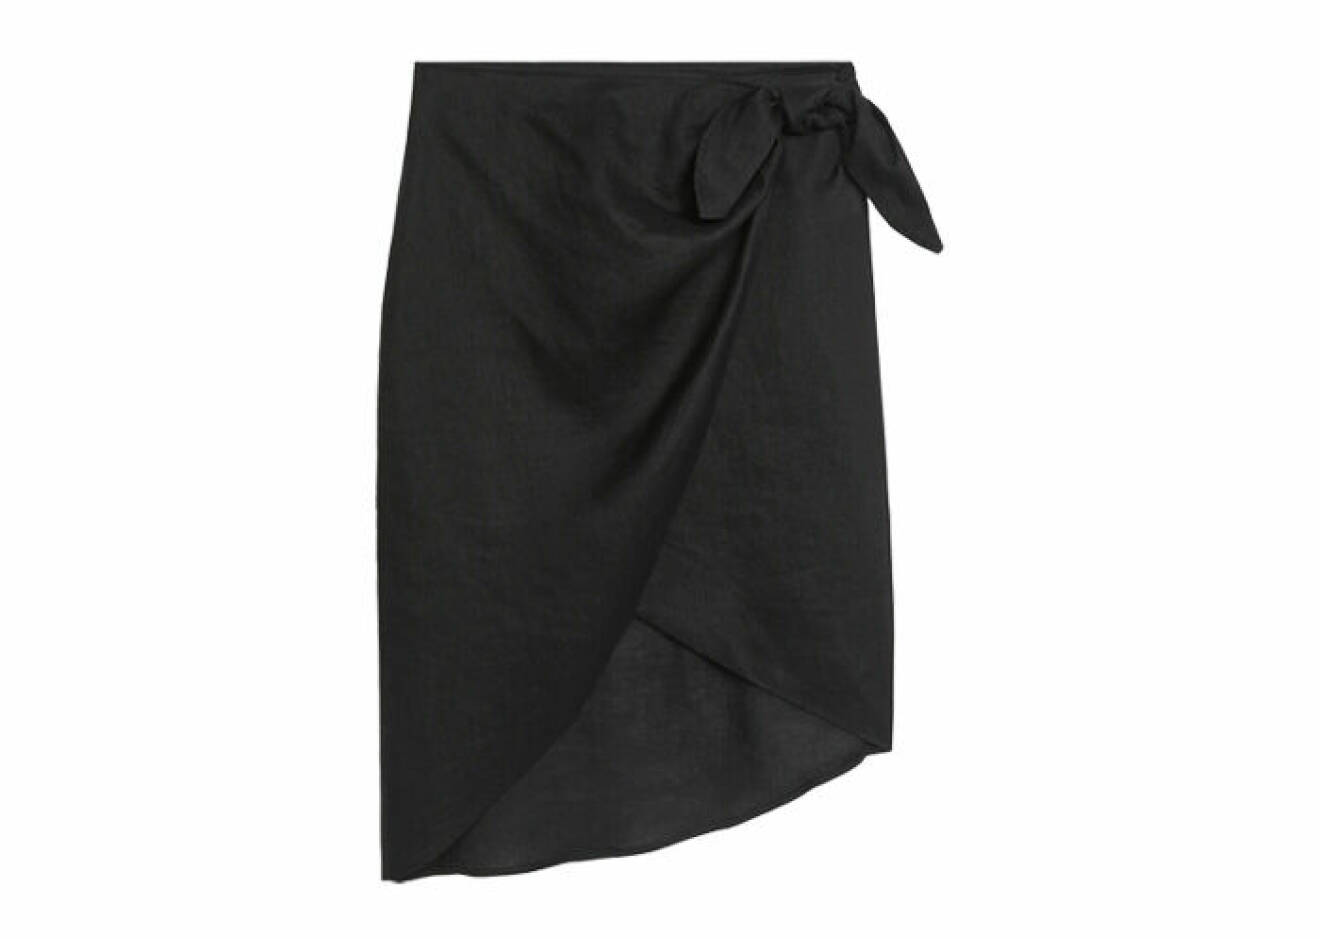 svart kjol i omlottdesign med rosett på sidan gjord i linne från Arket